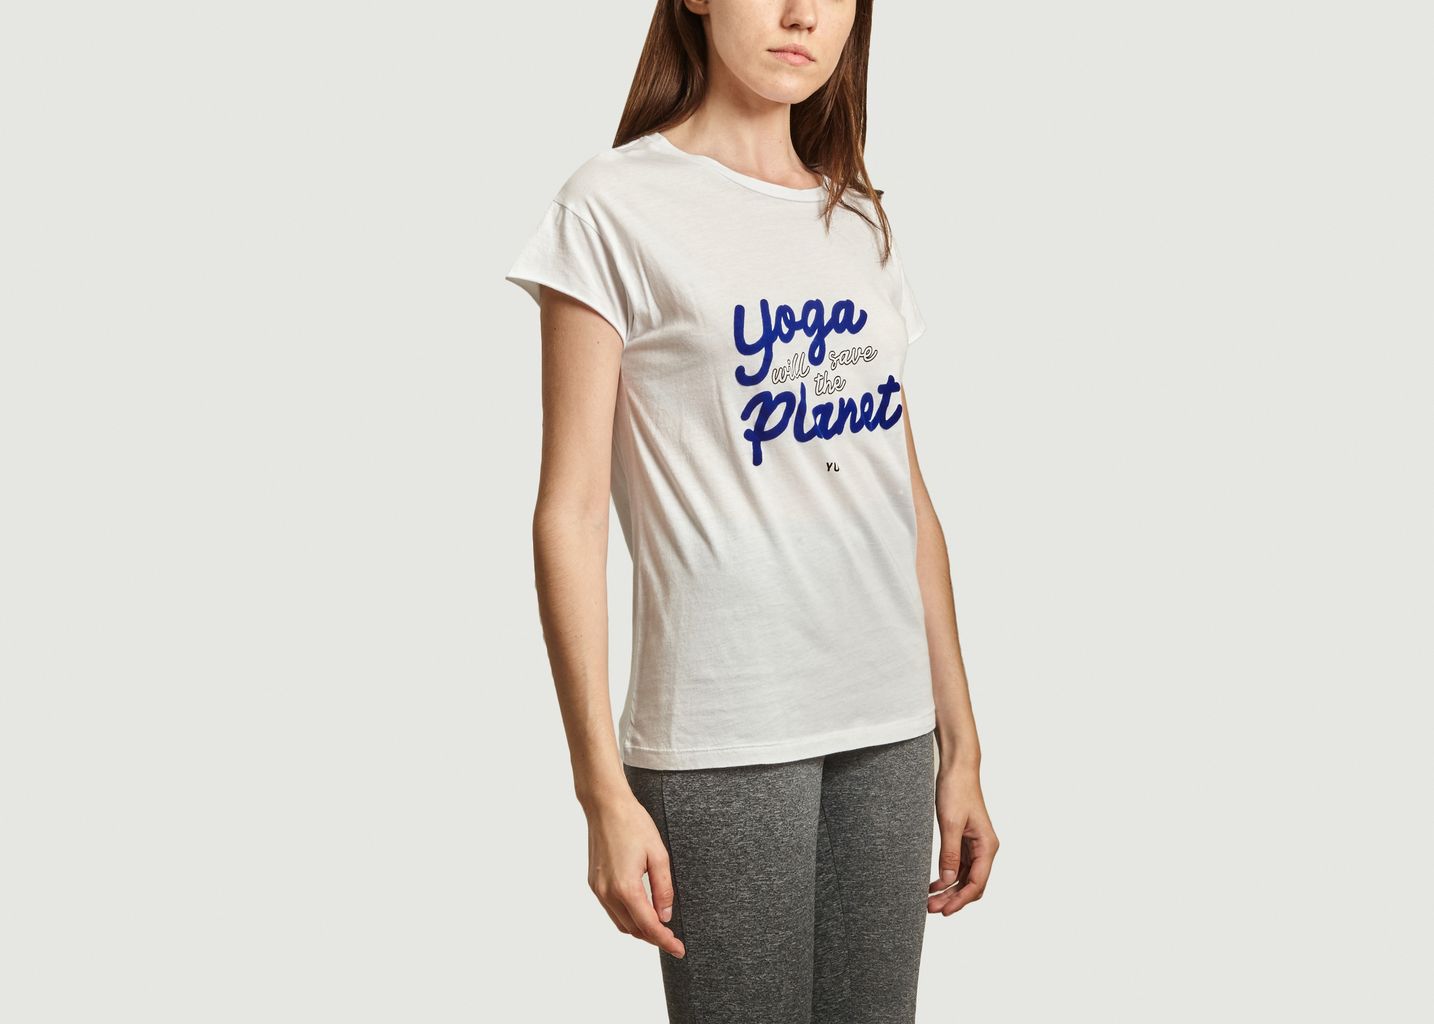 Yoga wird den Planeten retten T-Shirt - YUJ Paris